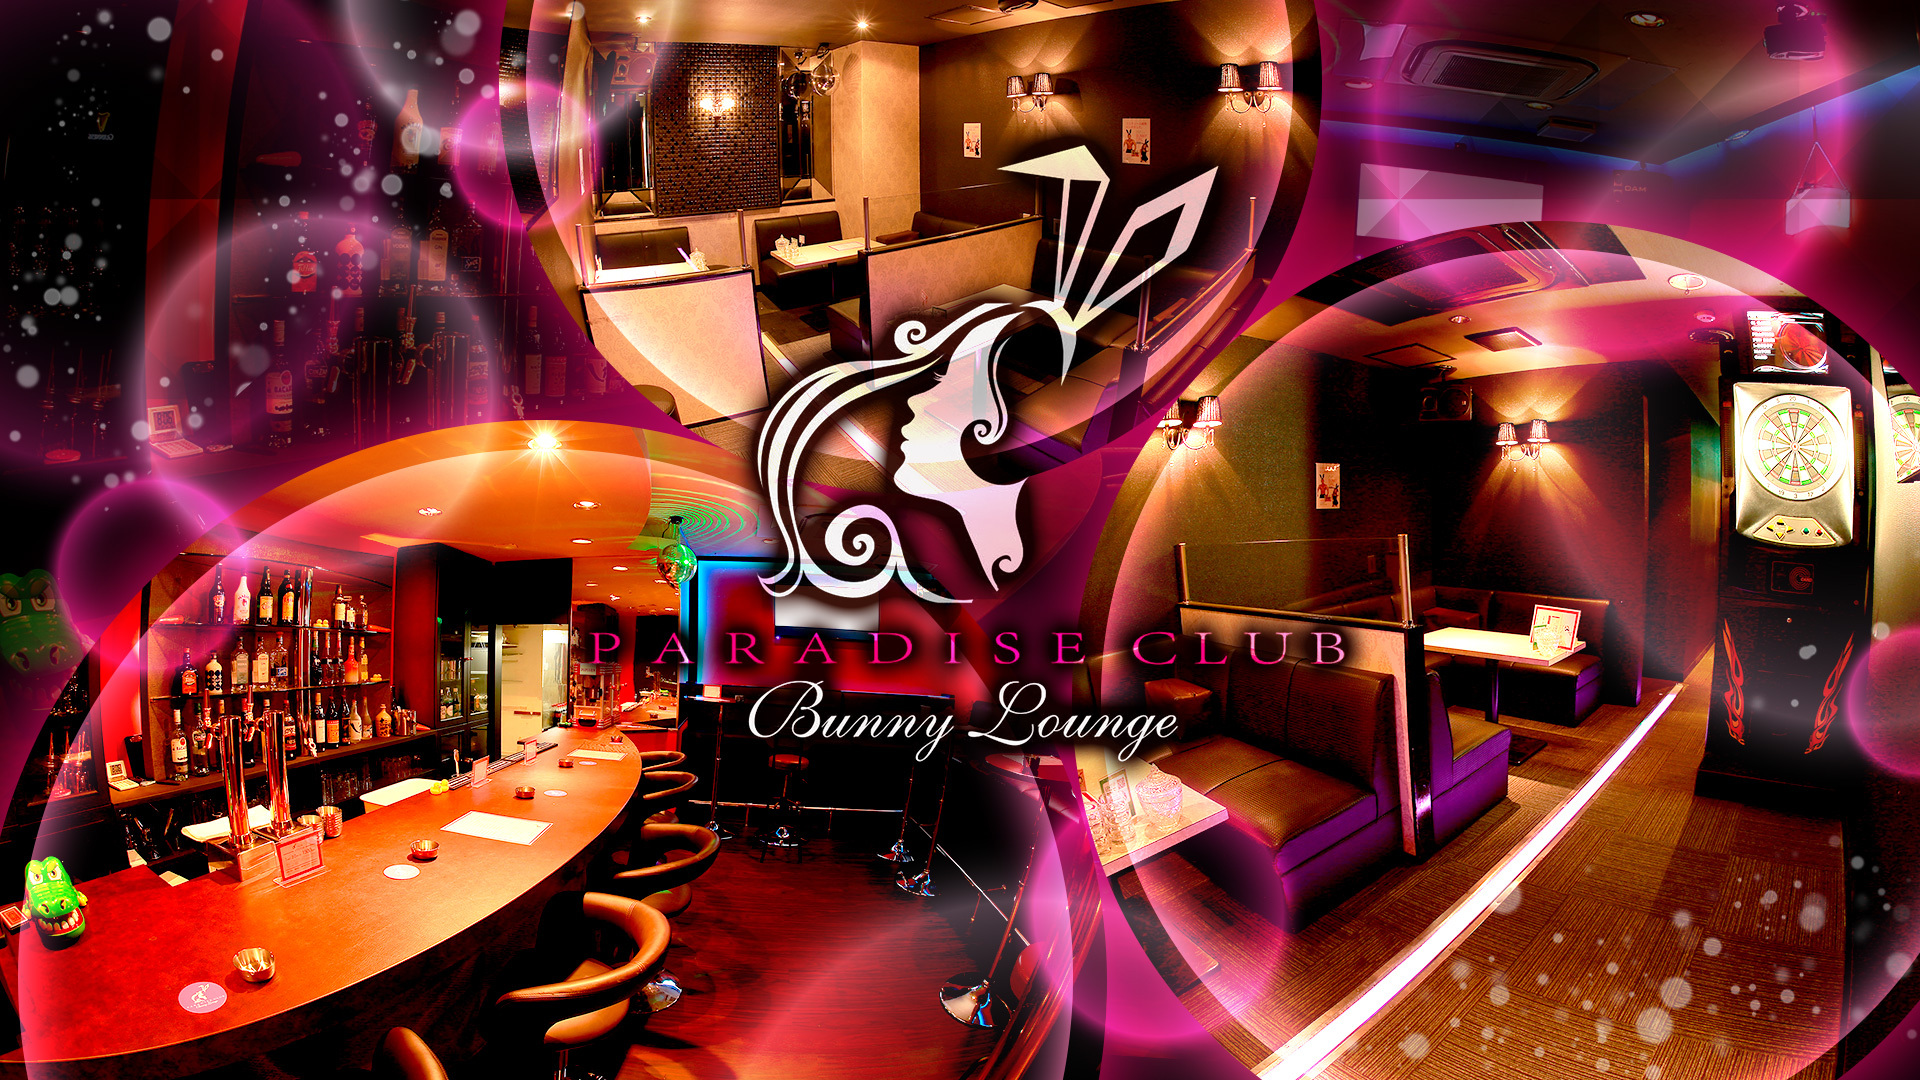 Paradise Club Bunny Lounge パラダイスクラブ 熊本市中央区新市街 ラウンジ ナイトスタイル